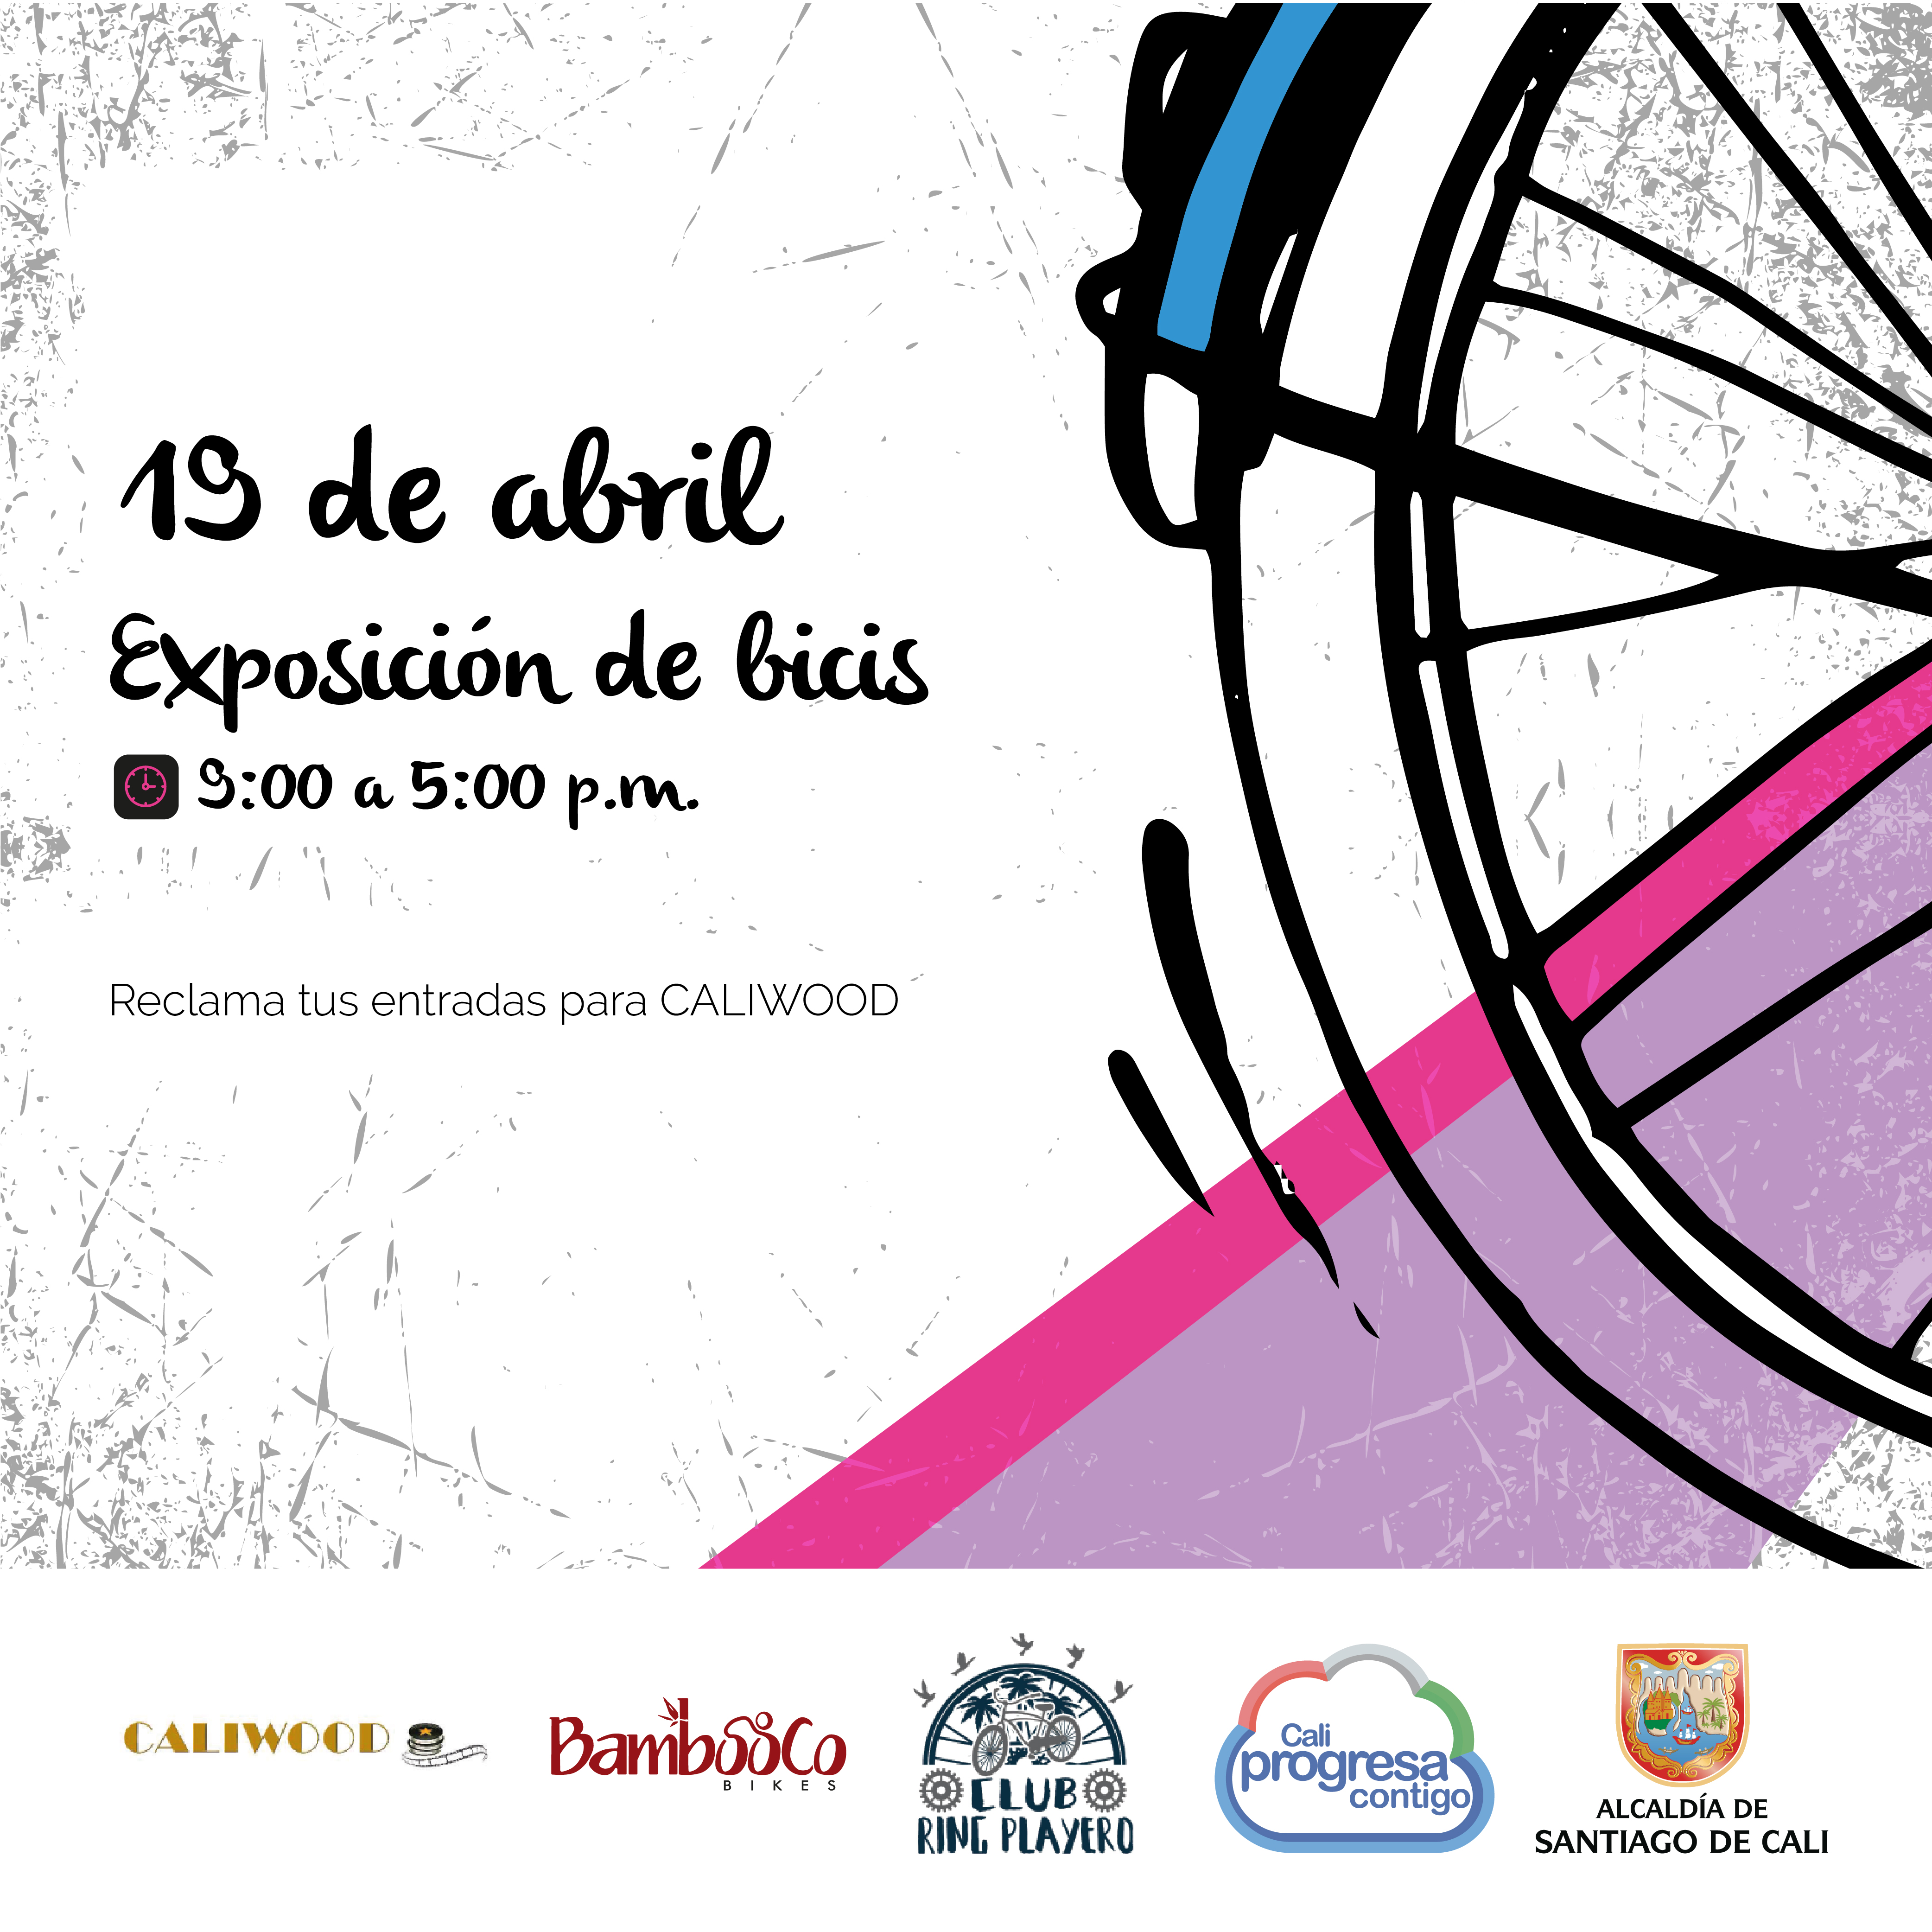 Conozca las actividades con las que Cali celebrará el Día Mundial de la Bicicleta